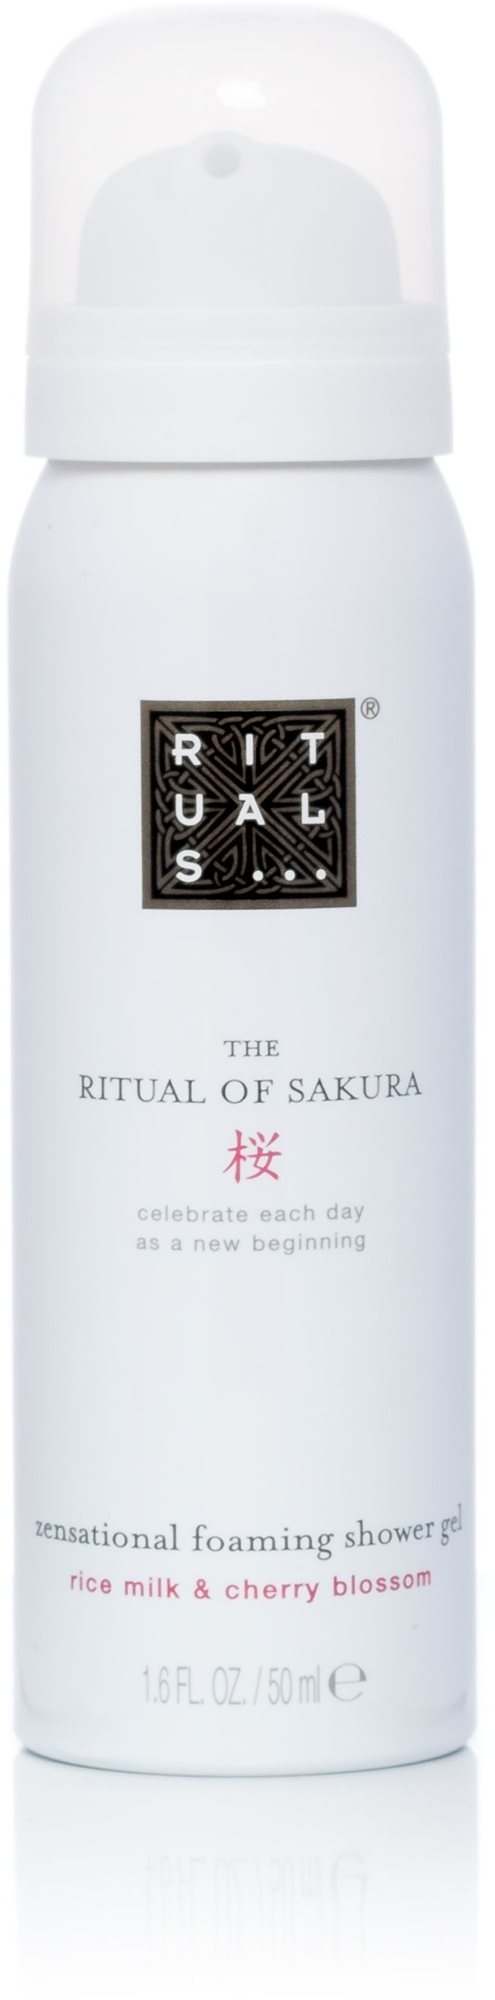 RITUALS The Ritual of Sakura Foaming Shower Gél 50 ml